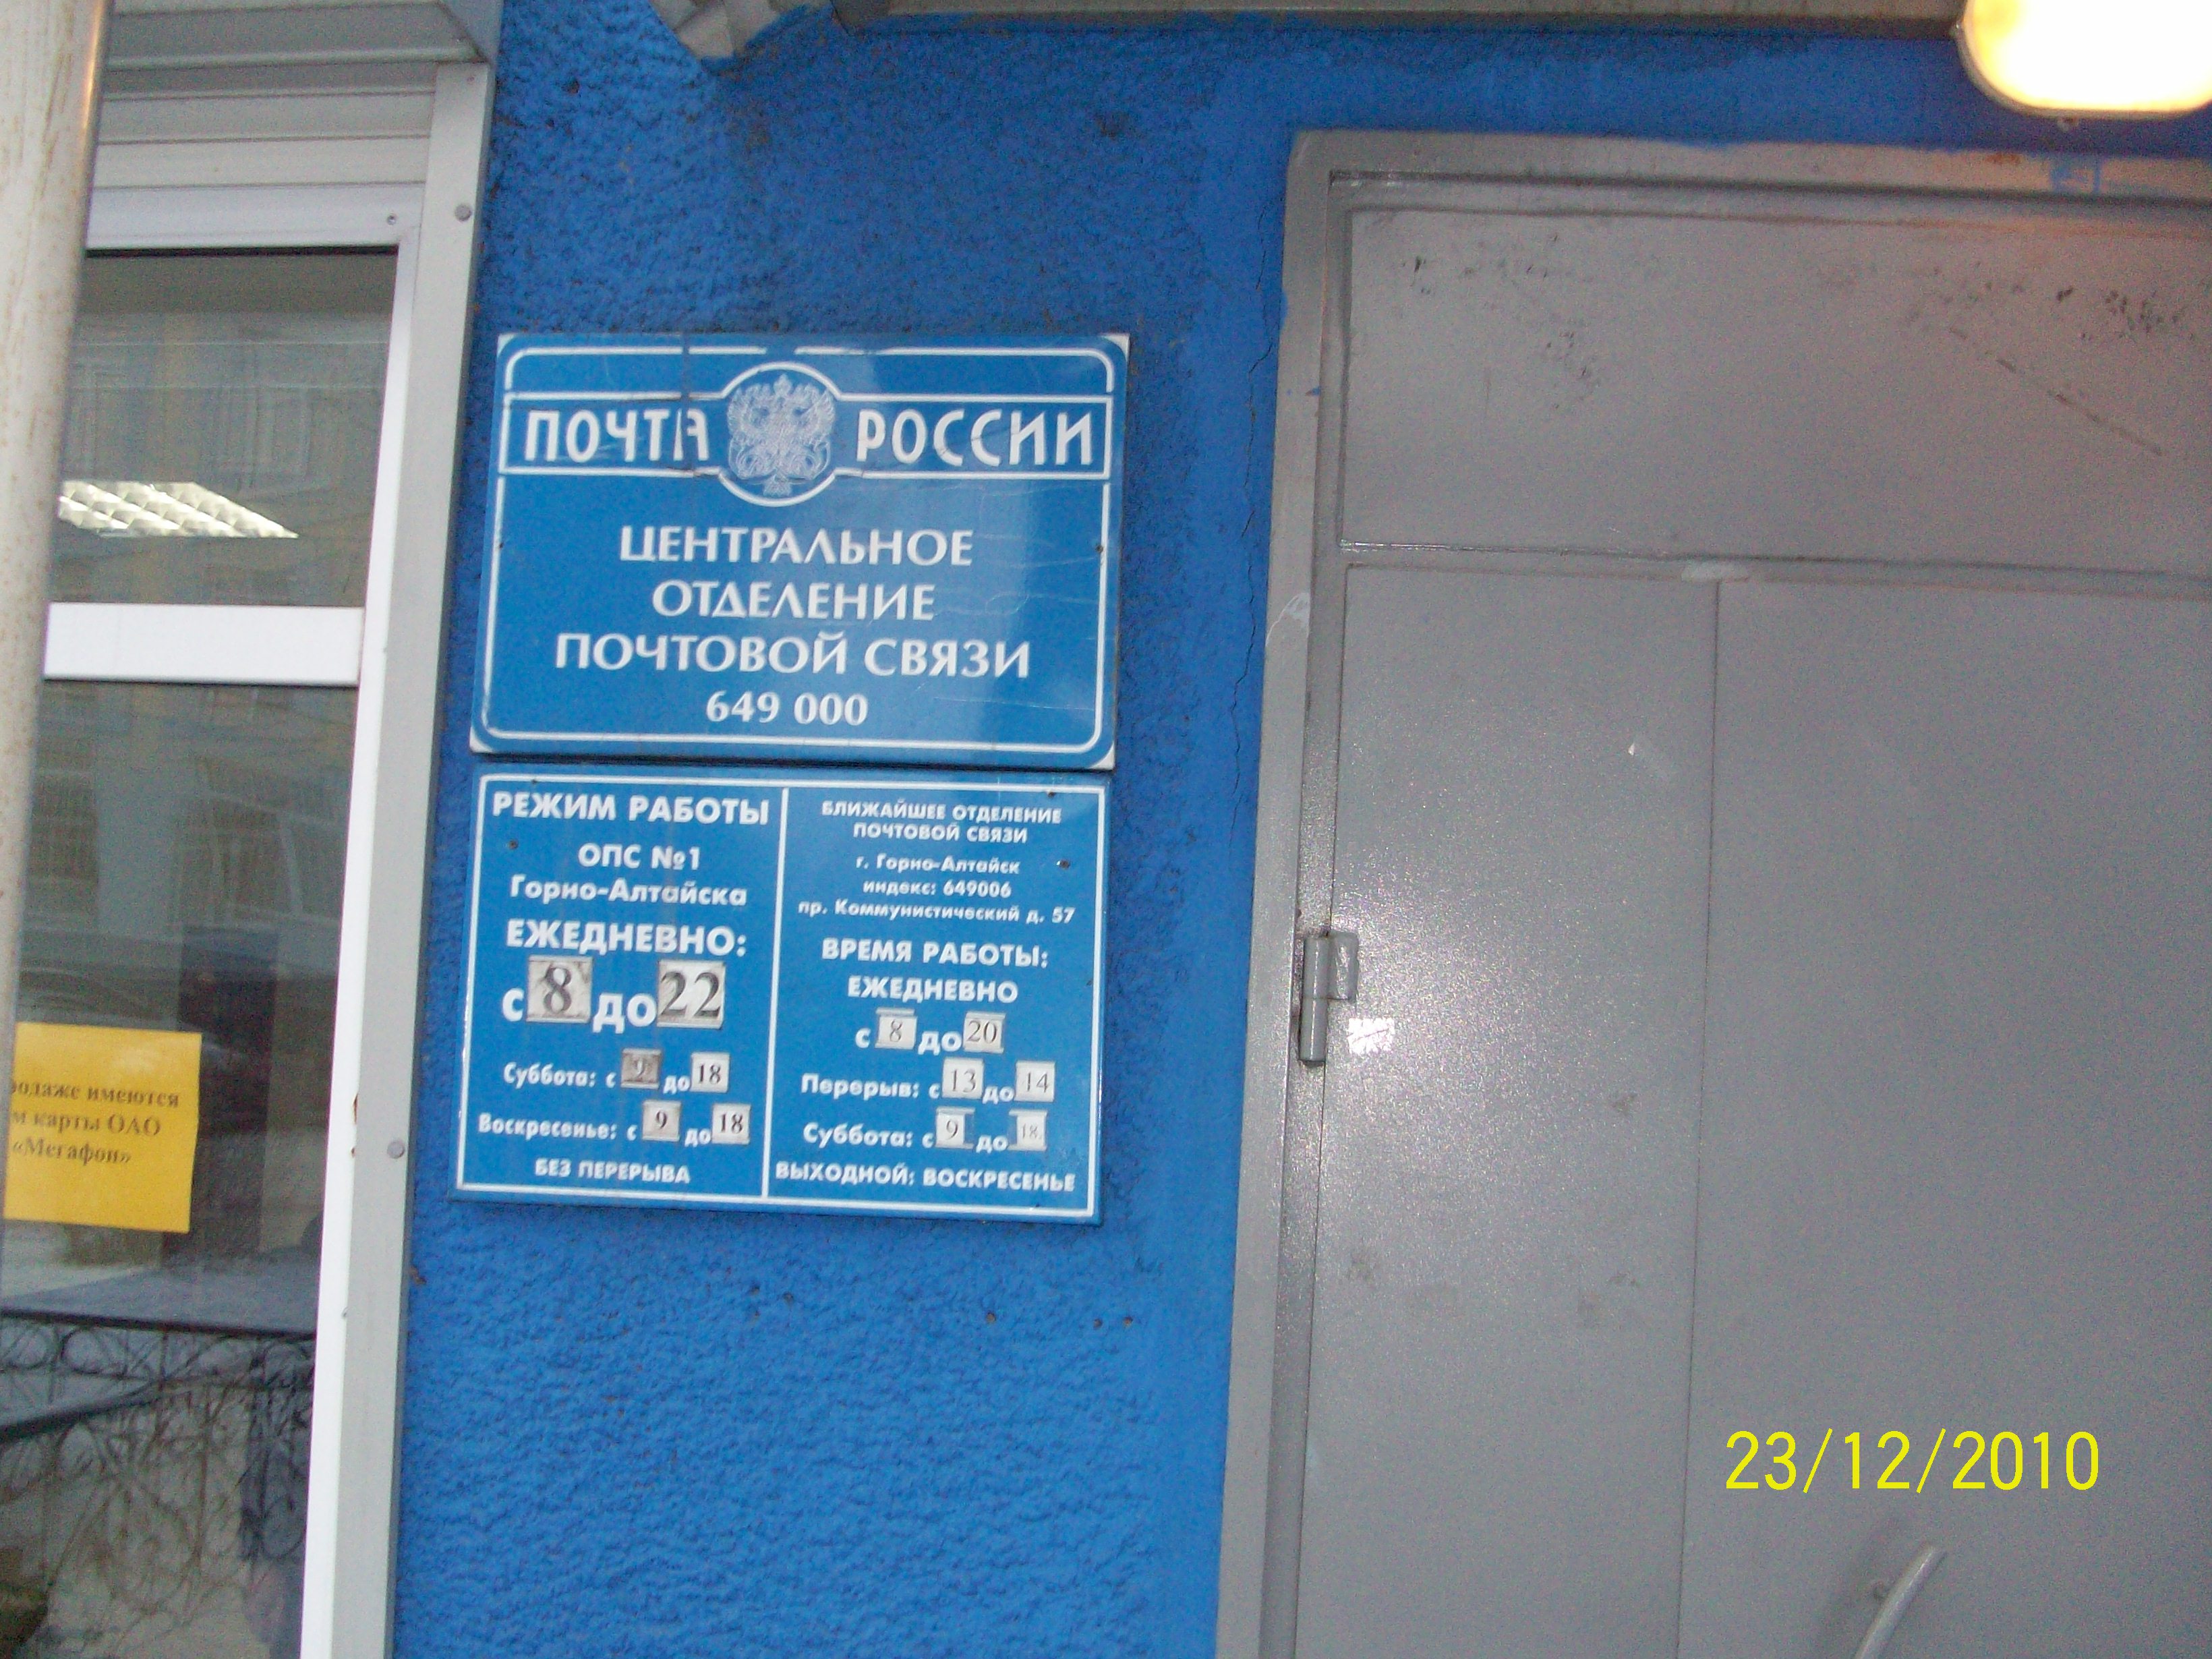 ВХОД, отделение почтовой связи 649000, Алтай респ., Горно-Алтайск